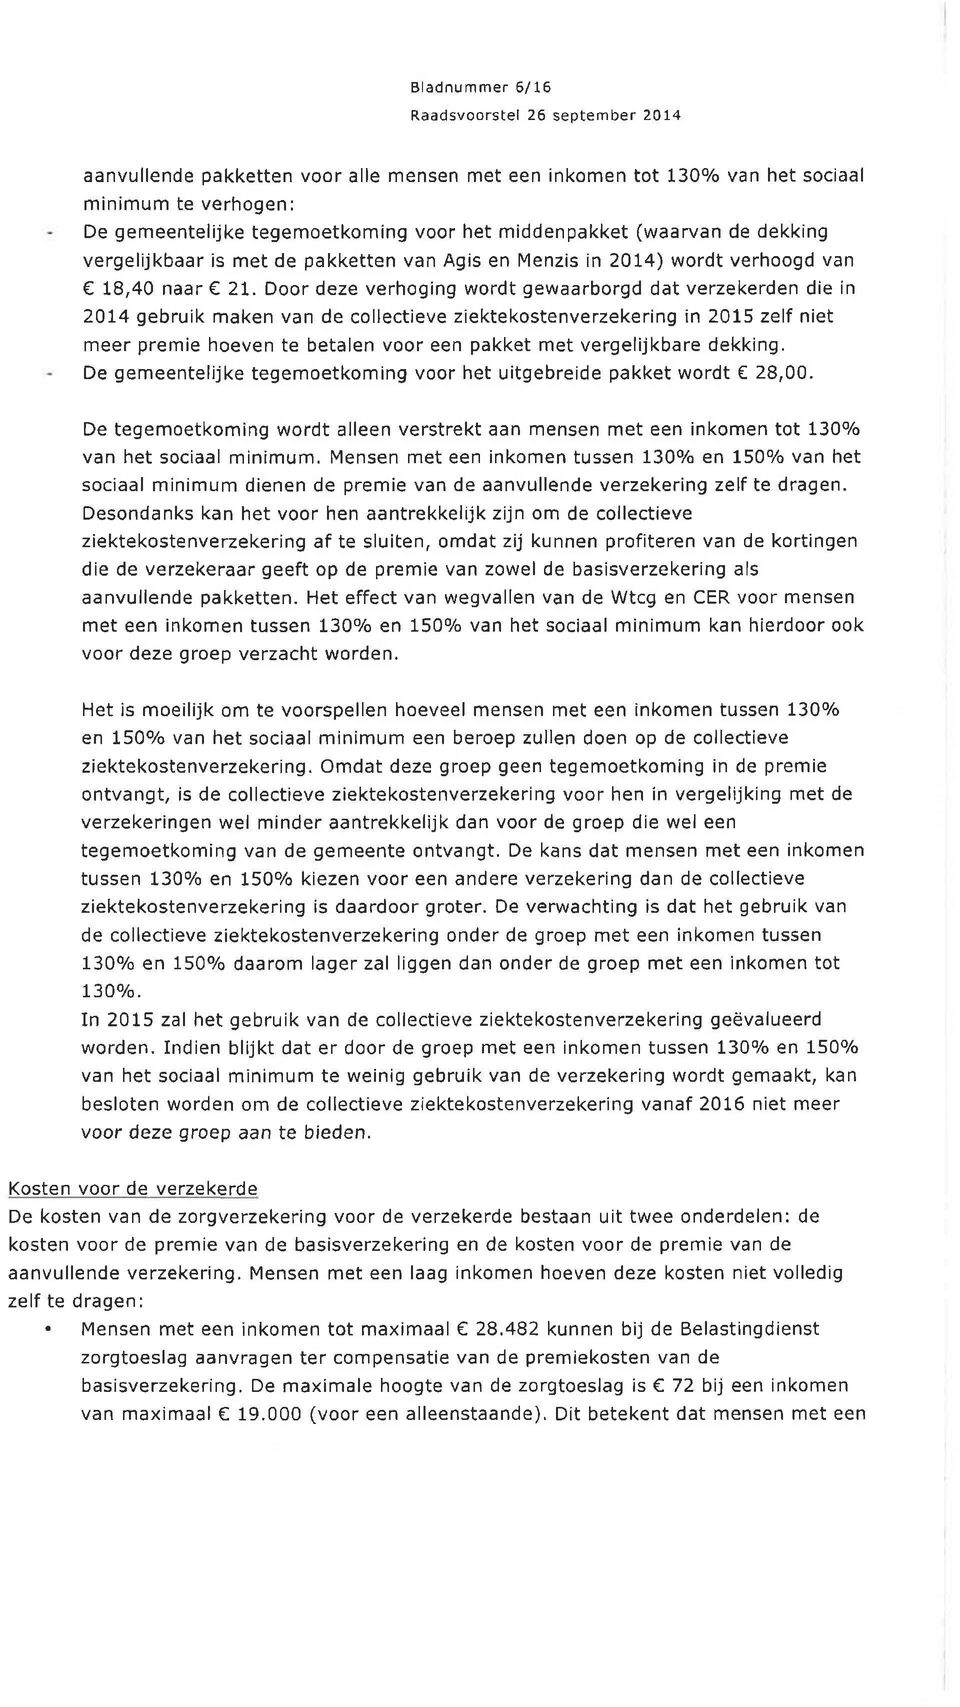 Door deze verhoging wordt gewaarborgd dat verzekerden die in )14 gebruik maken van de collectieve ziektekostenverzekering in 2015 zelf niet meer premie hoeven te betalen voor een pakket met